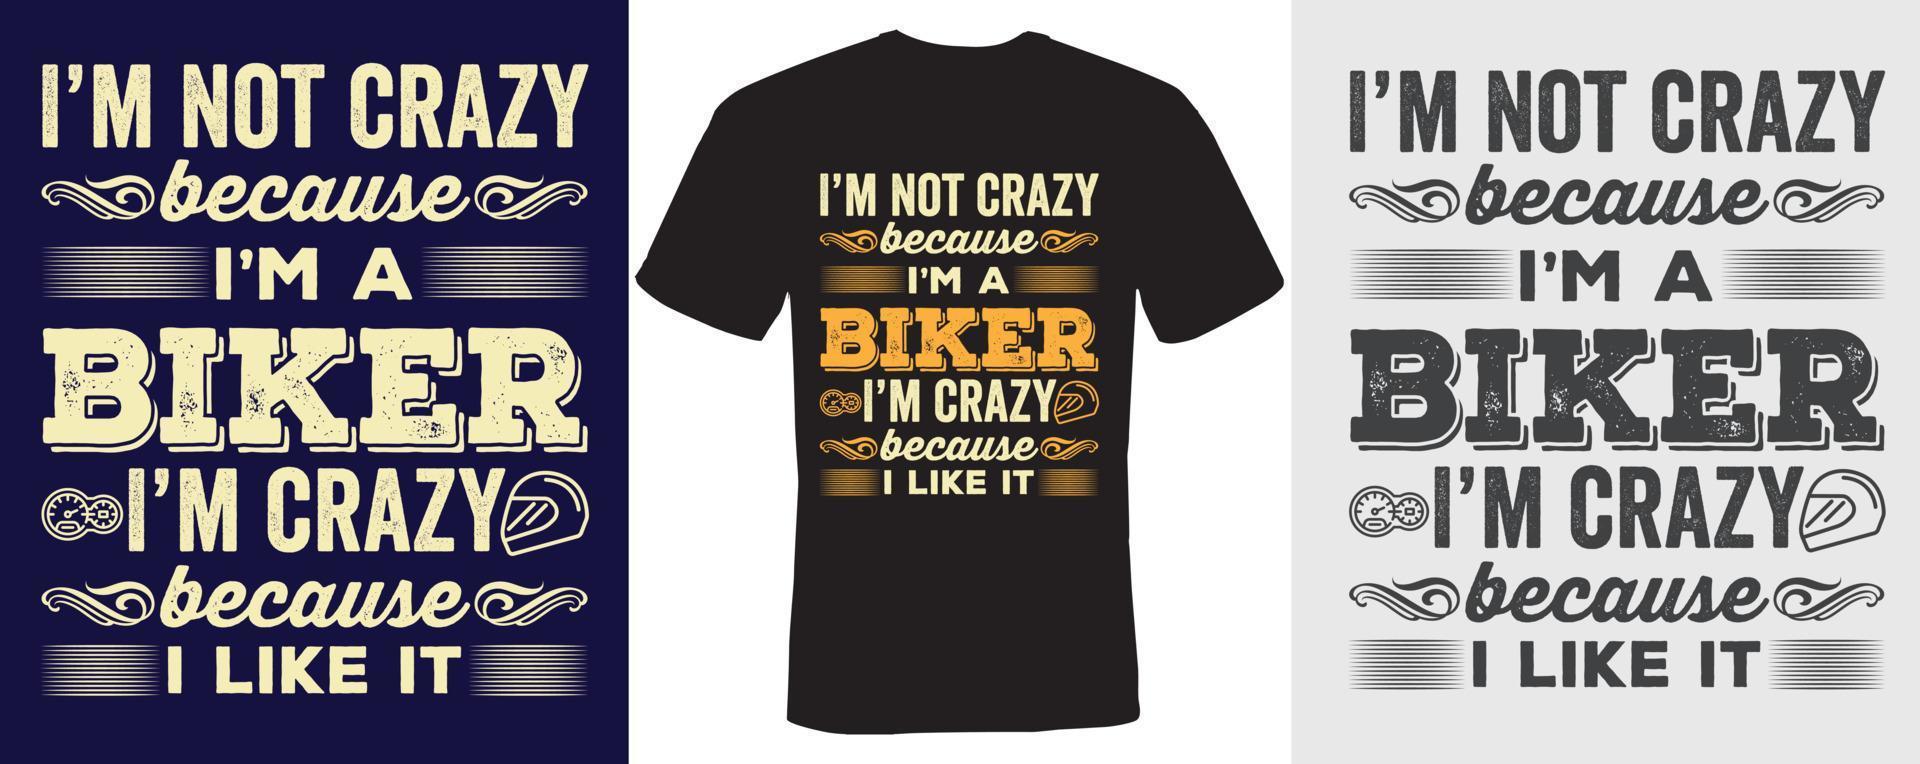 Ich bin nicht verrückt, weil ich ein Biker bin. Ich bin verrückt, weil ich es mag, T-Shirt-Design für Biker vektor